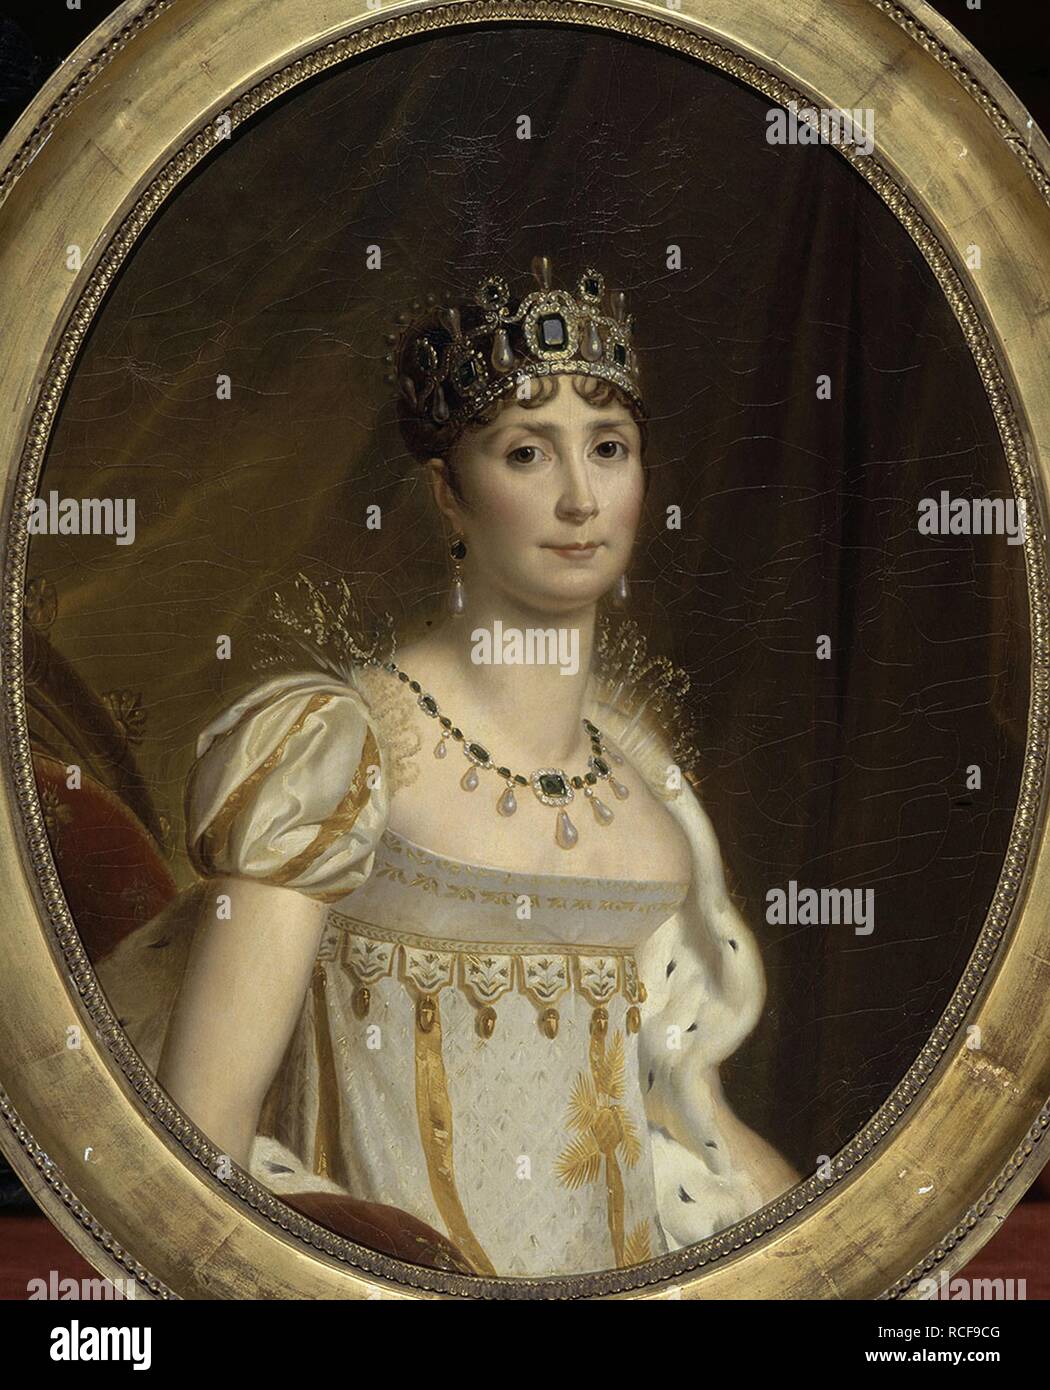 Joséphine de Beauharnais, the first wife of Napoléon Bonaparte (1763-1814). Museum: Musée national des châteaux de Malmaison et de Bois-Préau. Author: GERARD, FRANÇOIS. Stock Photo